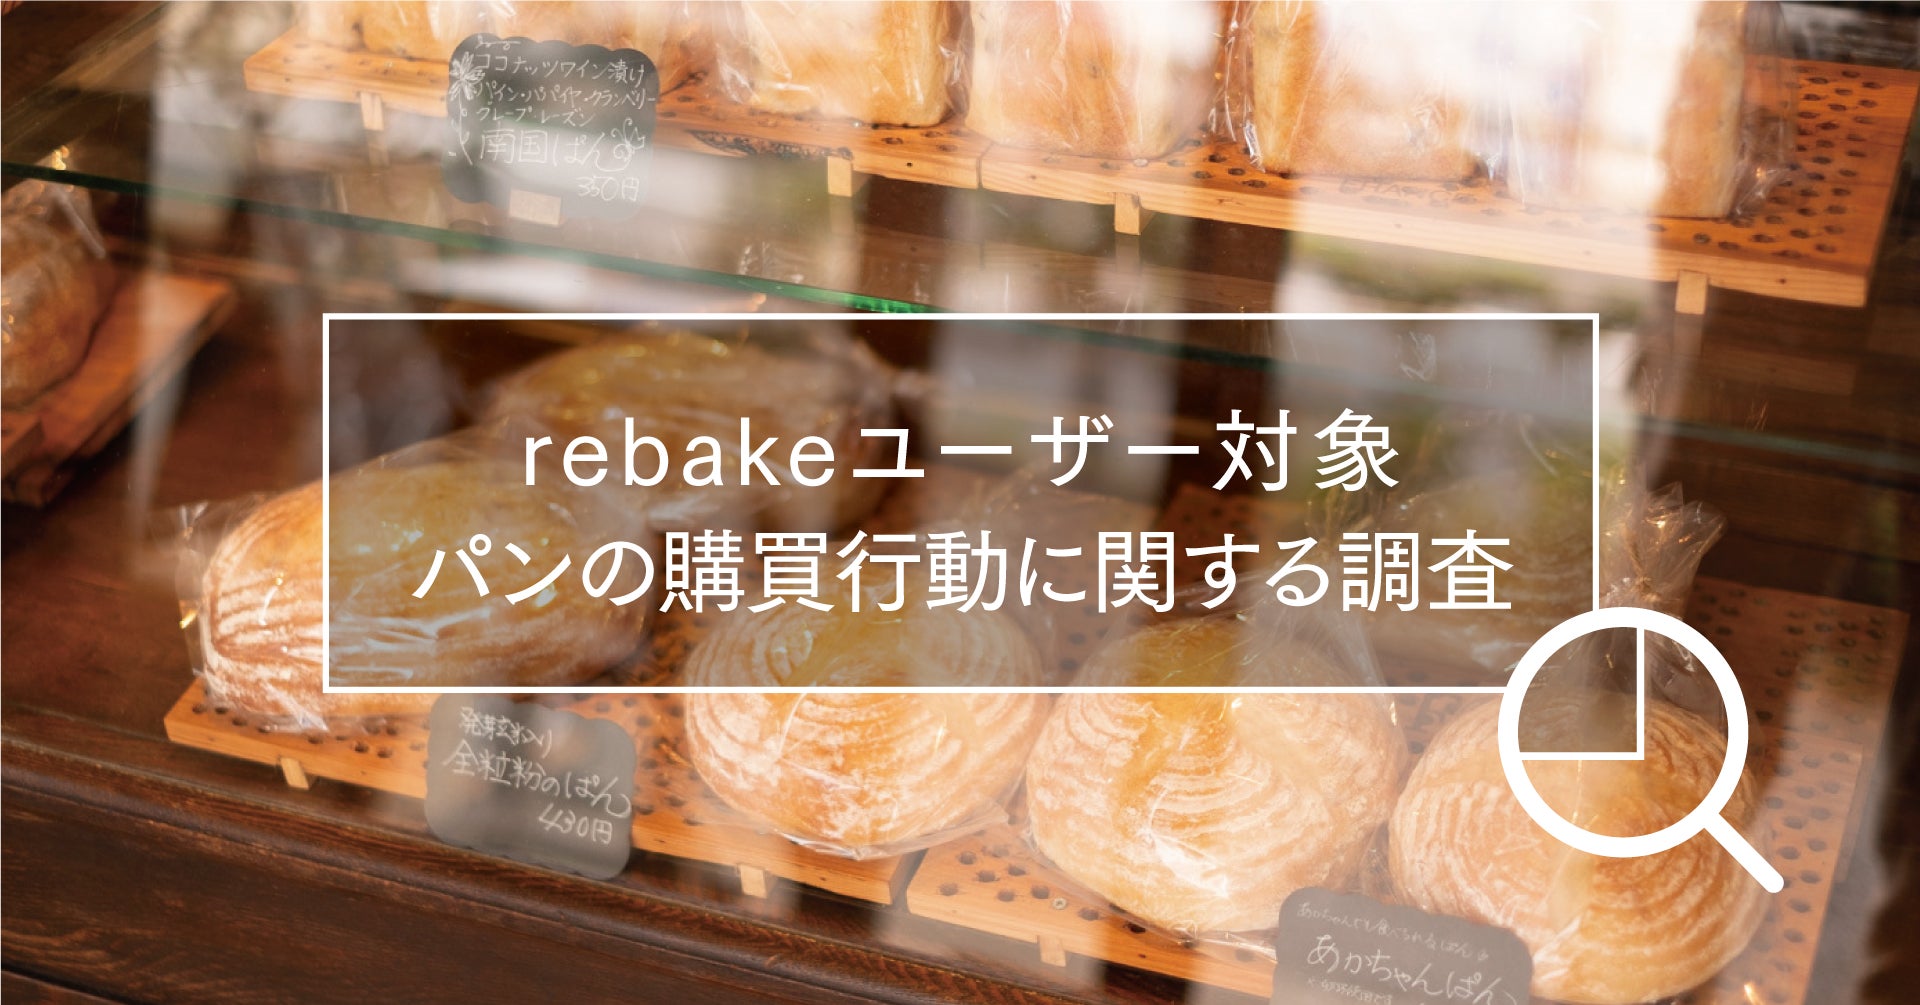 【rebake調査レポート】rebakeユーザーの75.8%が、旅先でもパン屋さんを訪問すると回答。